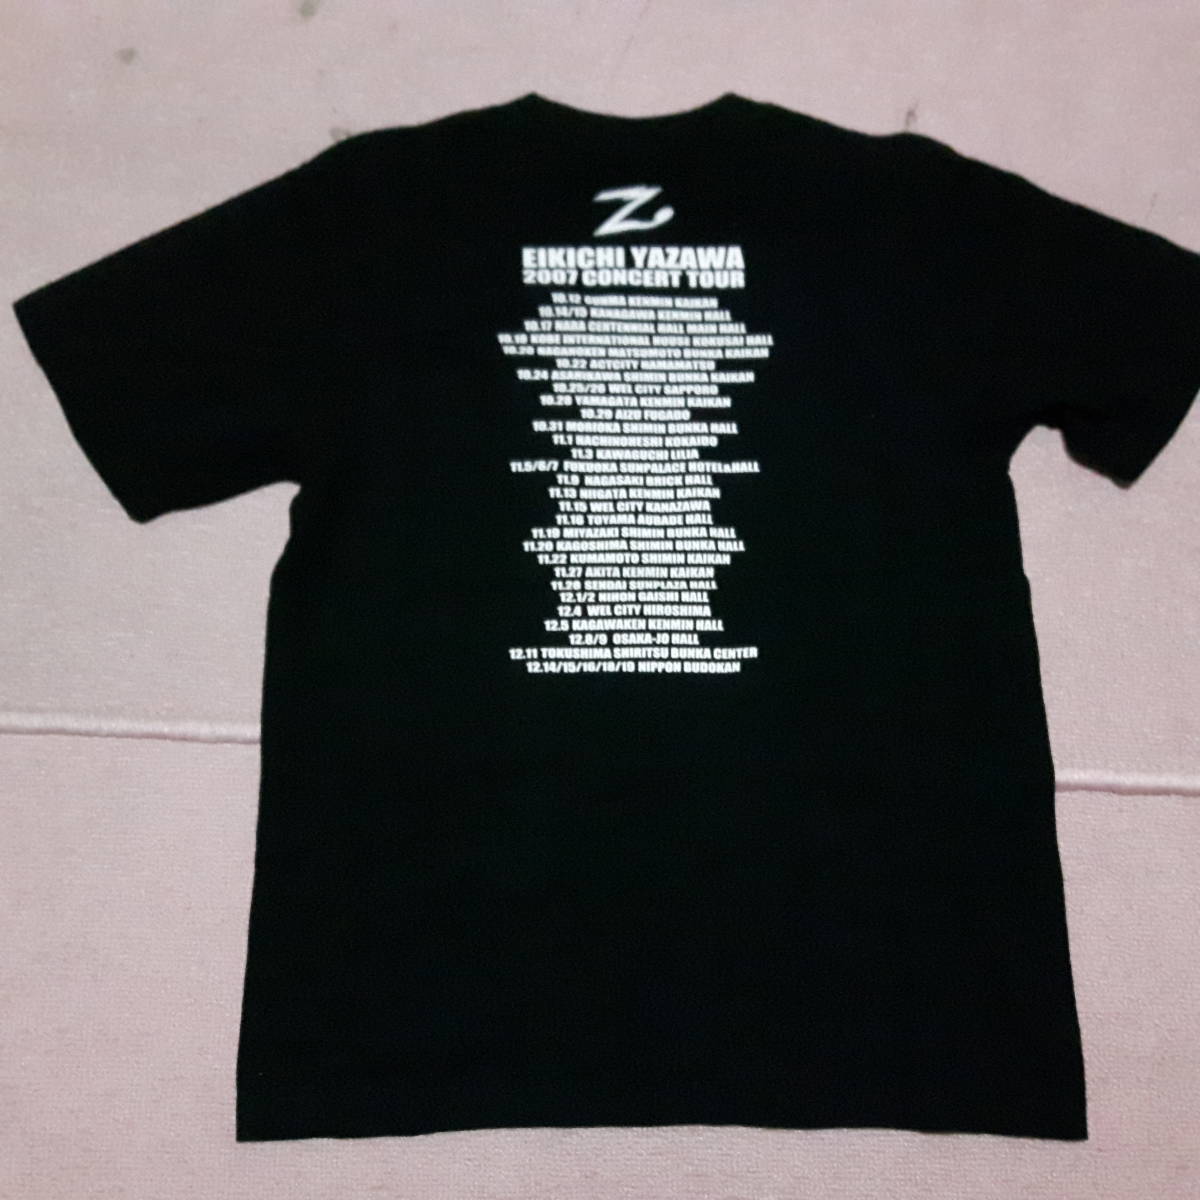  Yazawa Eikichi концерт Tour футболка (THE REAL 2007)